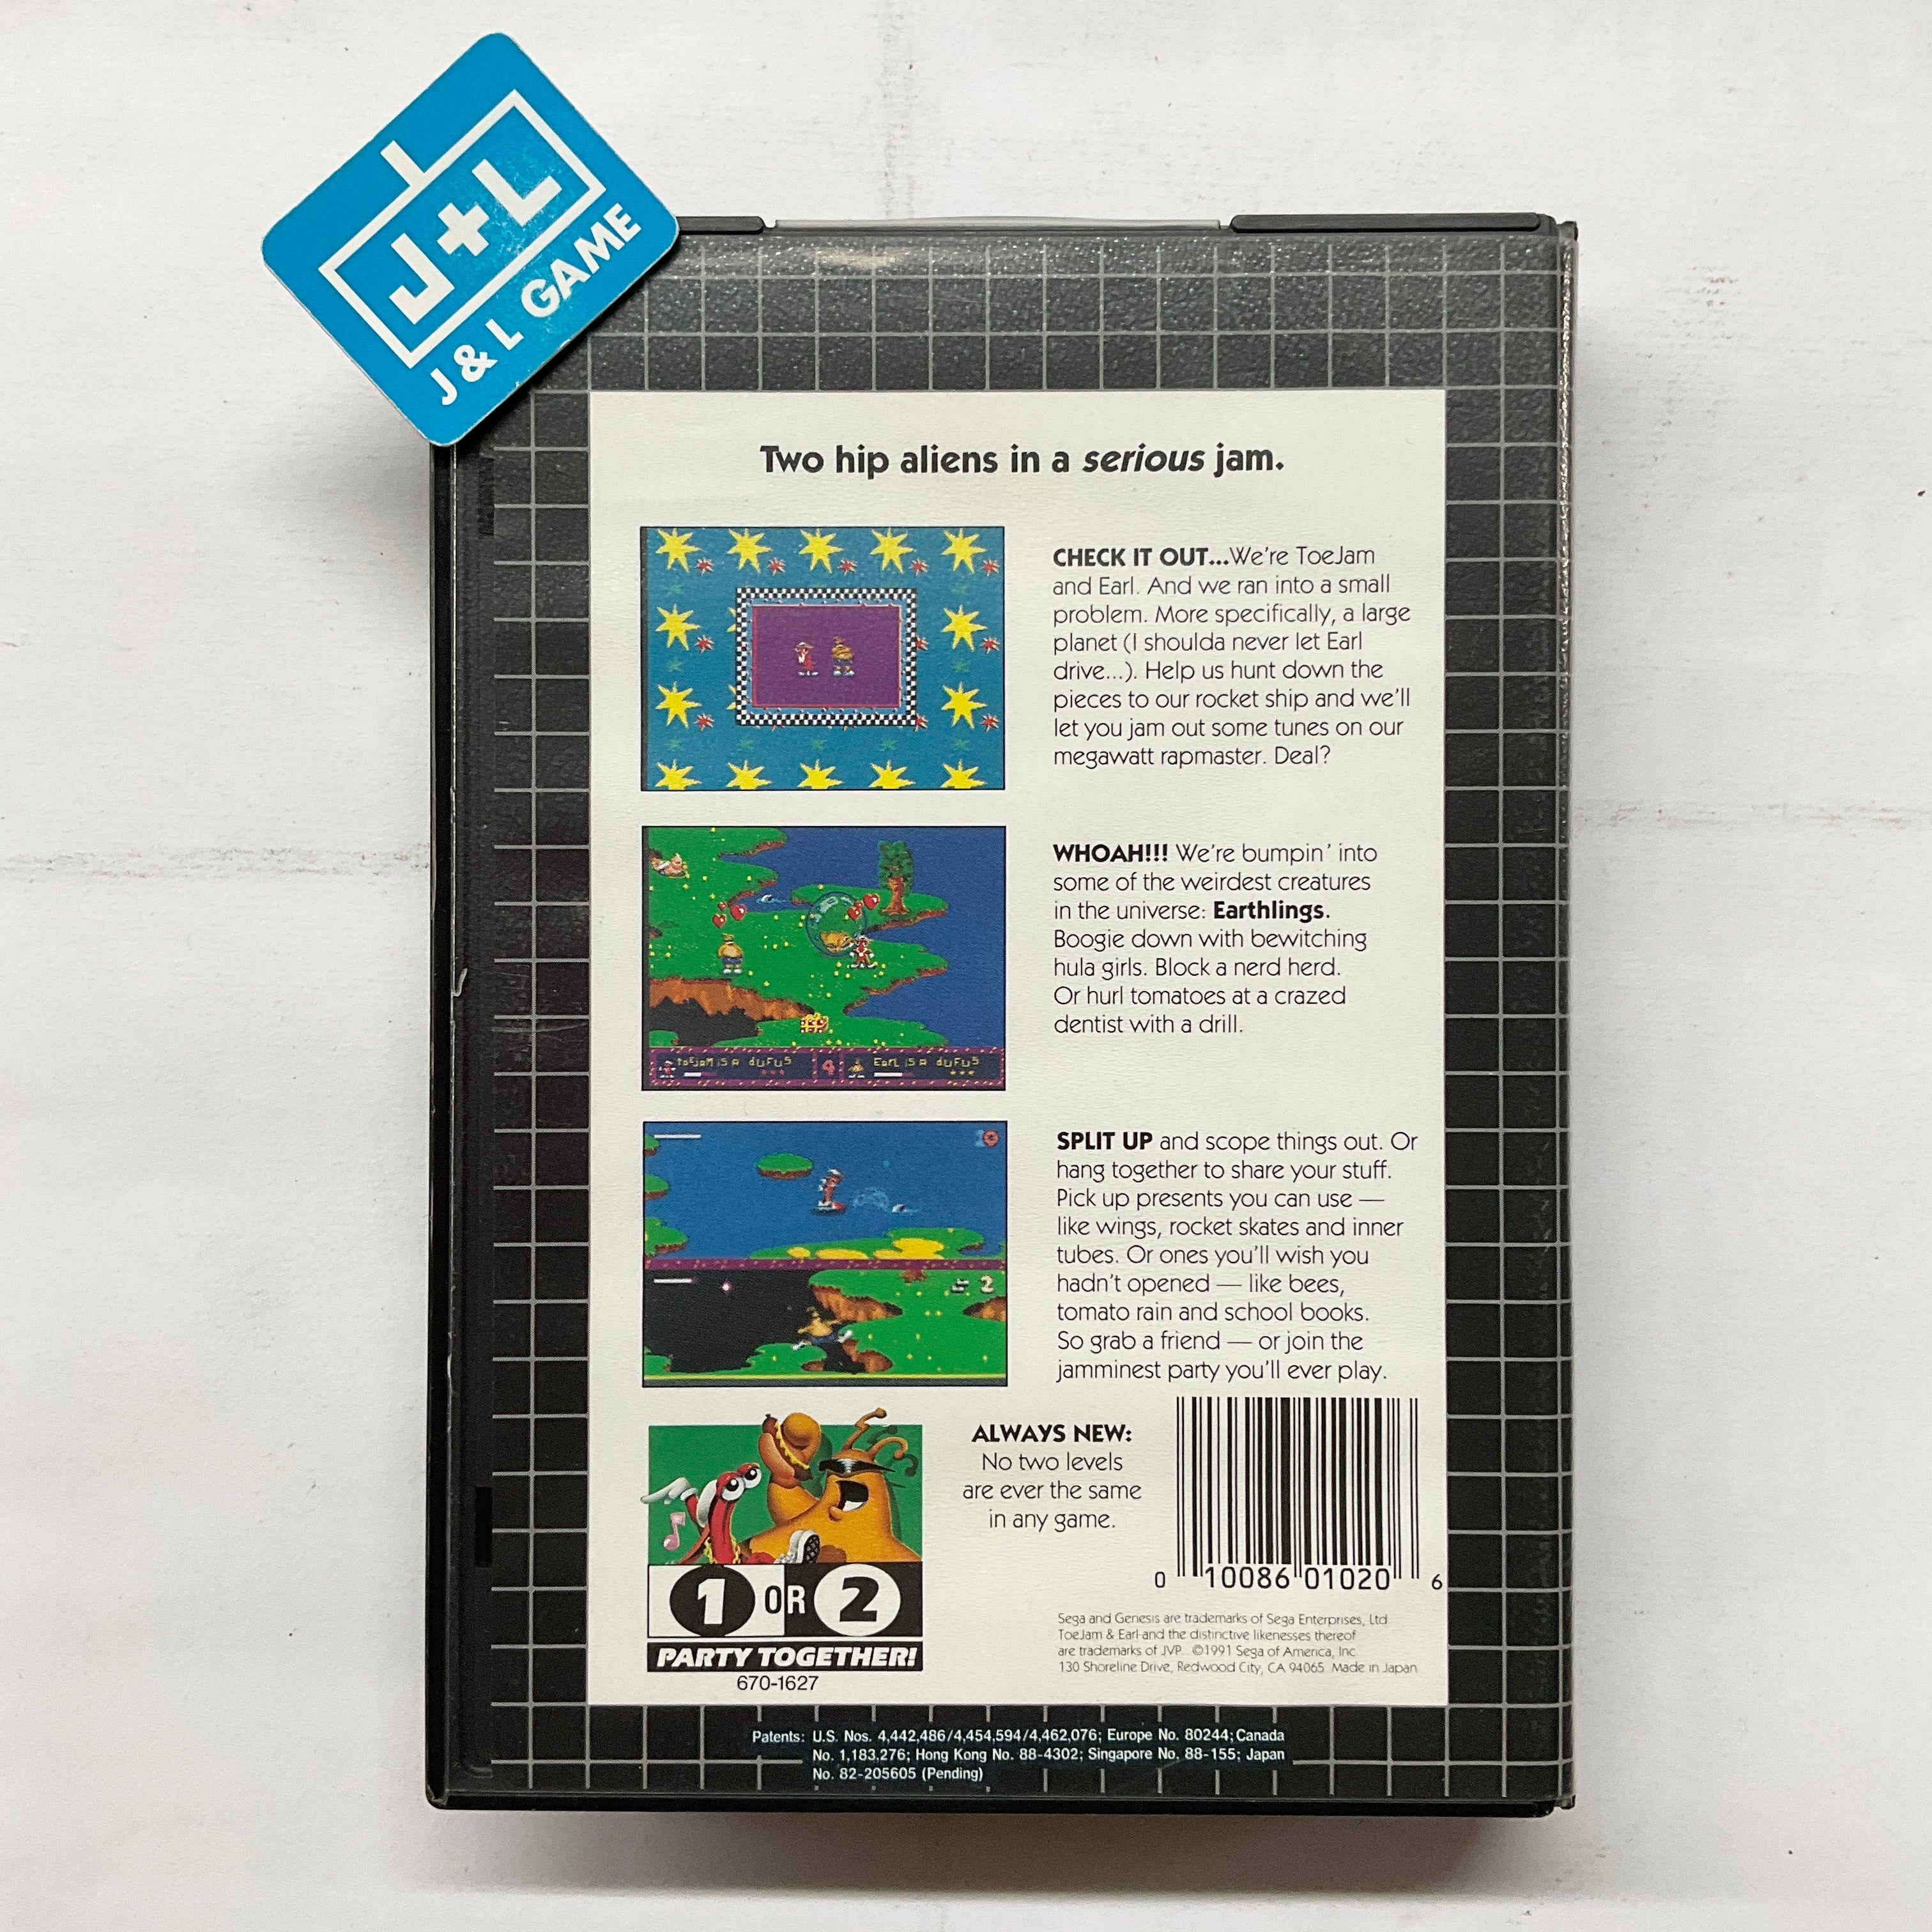 ToeJam & Earl - (SG) SEGA Genesis [Pre-Owned] Video Games Sega   